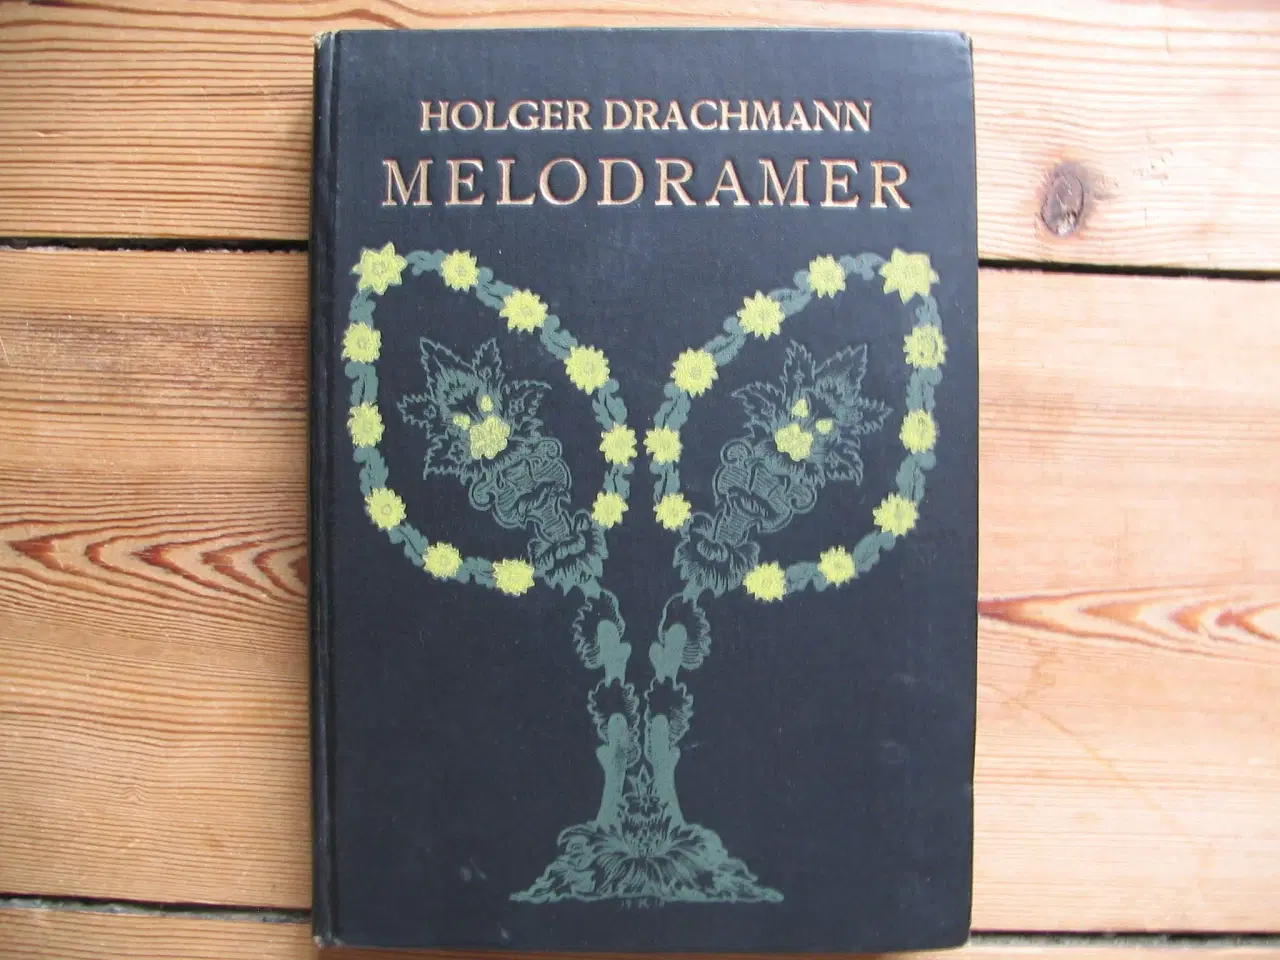 Billede 1 - Holger Drachmann. Melodramer, 1910